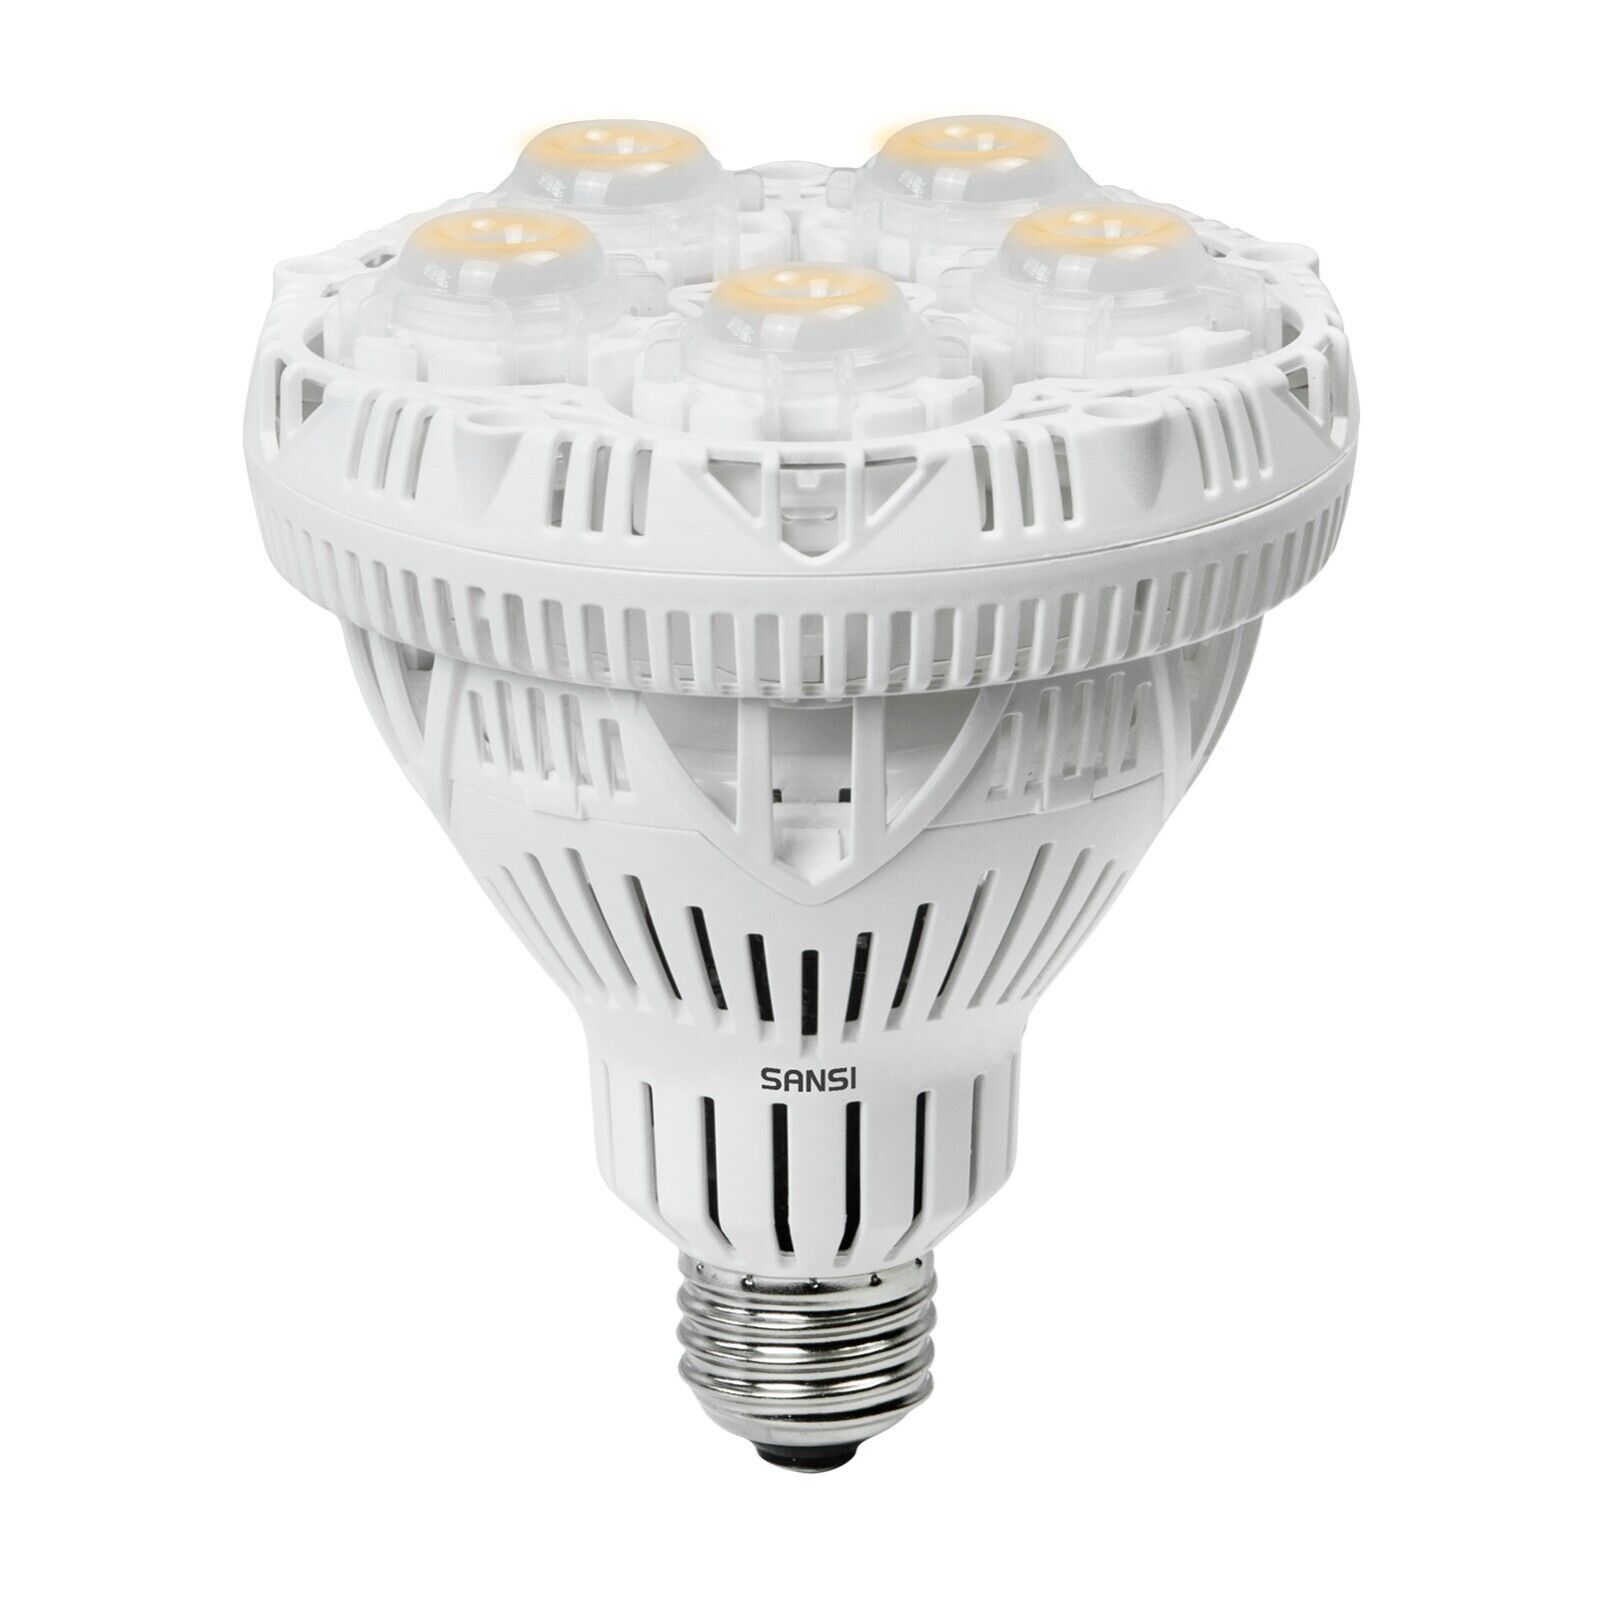 SANSI 24W LED Plant Grow Light Bulb Full Spectrum Indoor Veg Bloom Growth Lamp